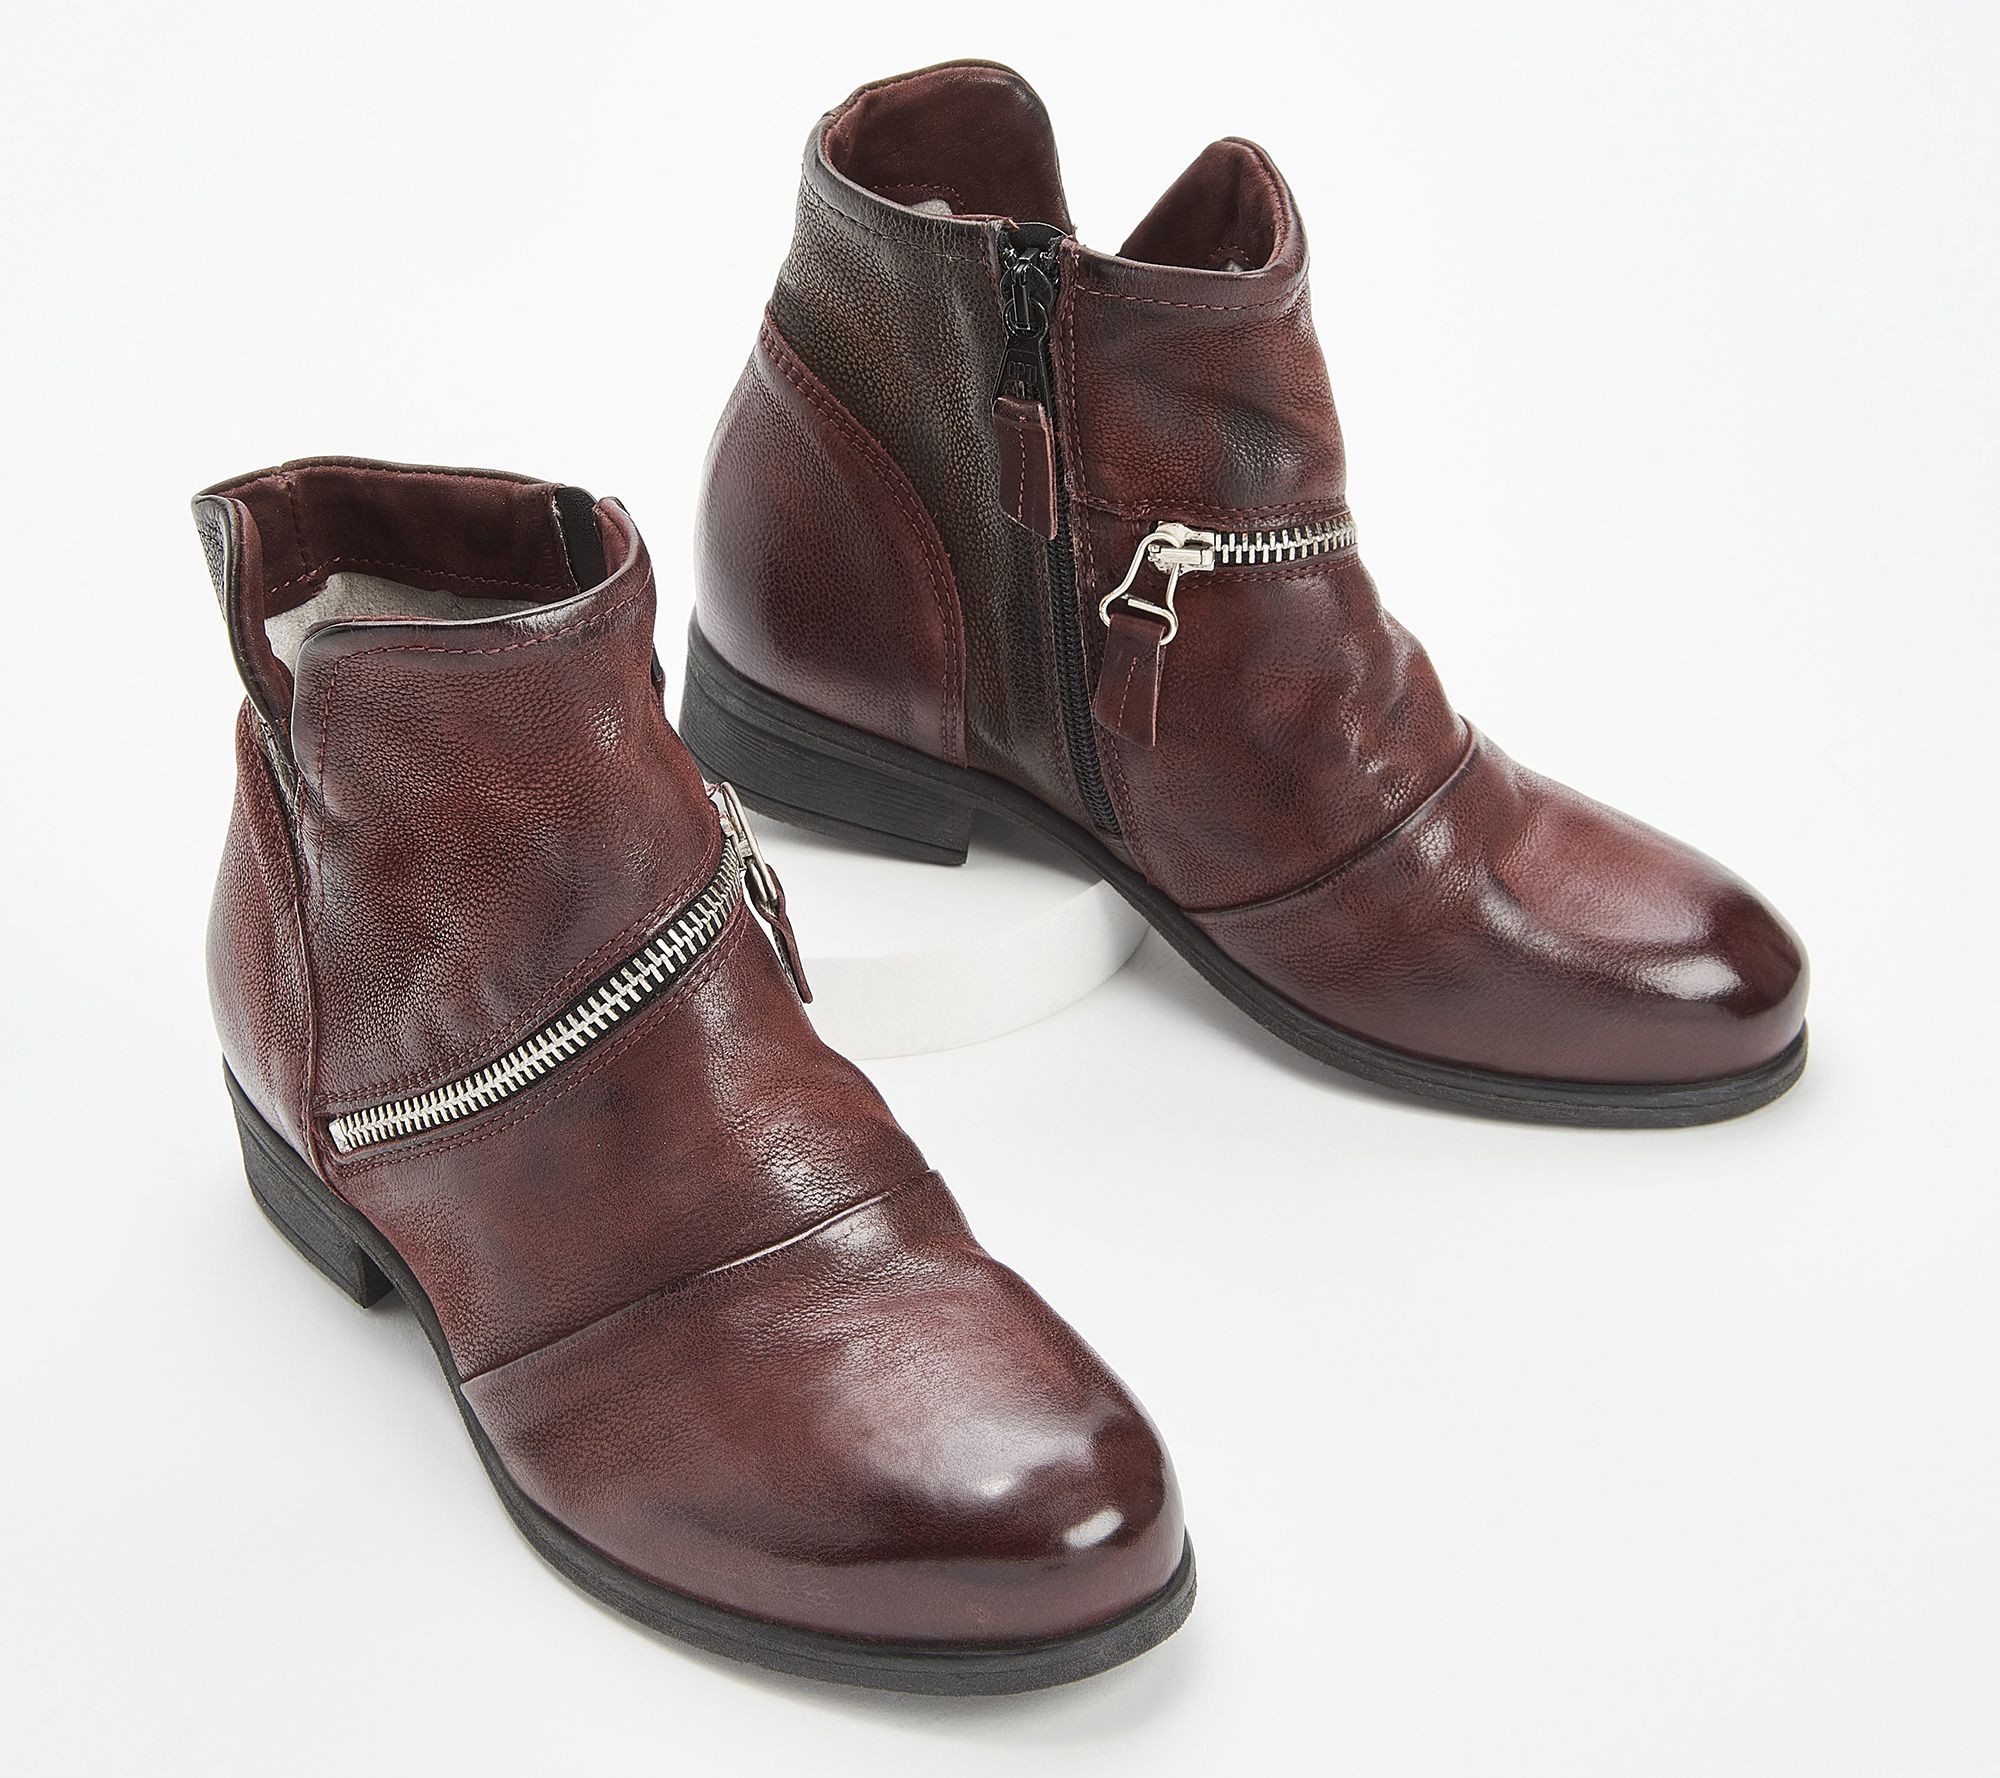 Miz Mooz Leather Cut Out Ankle Boots - Solace - QVC.com